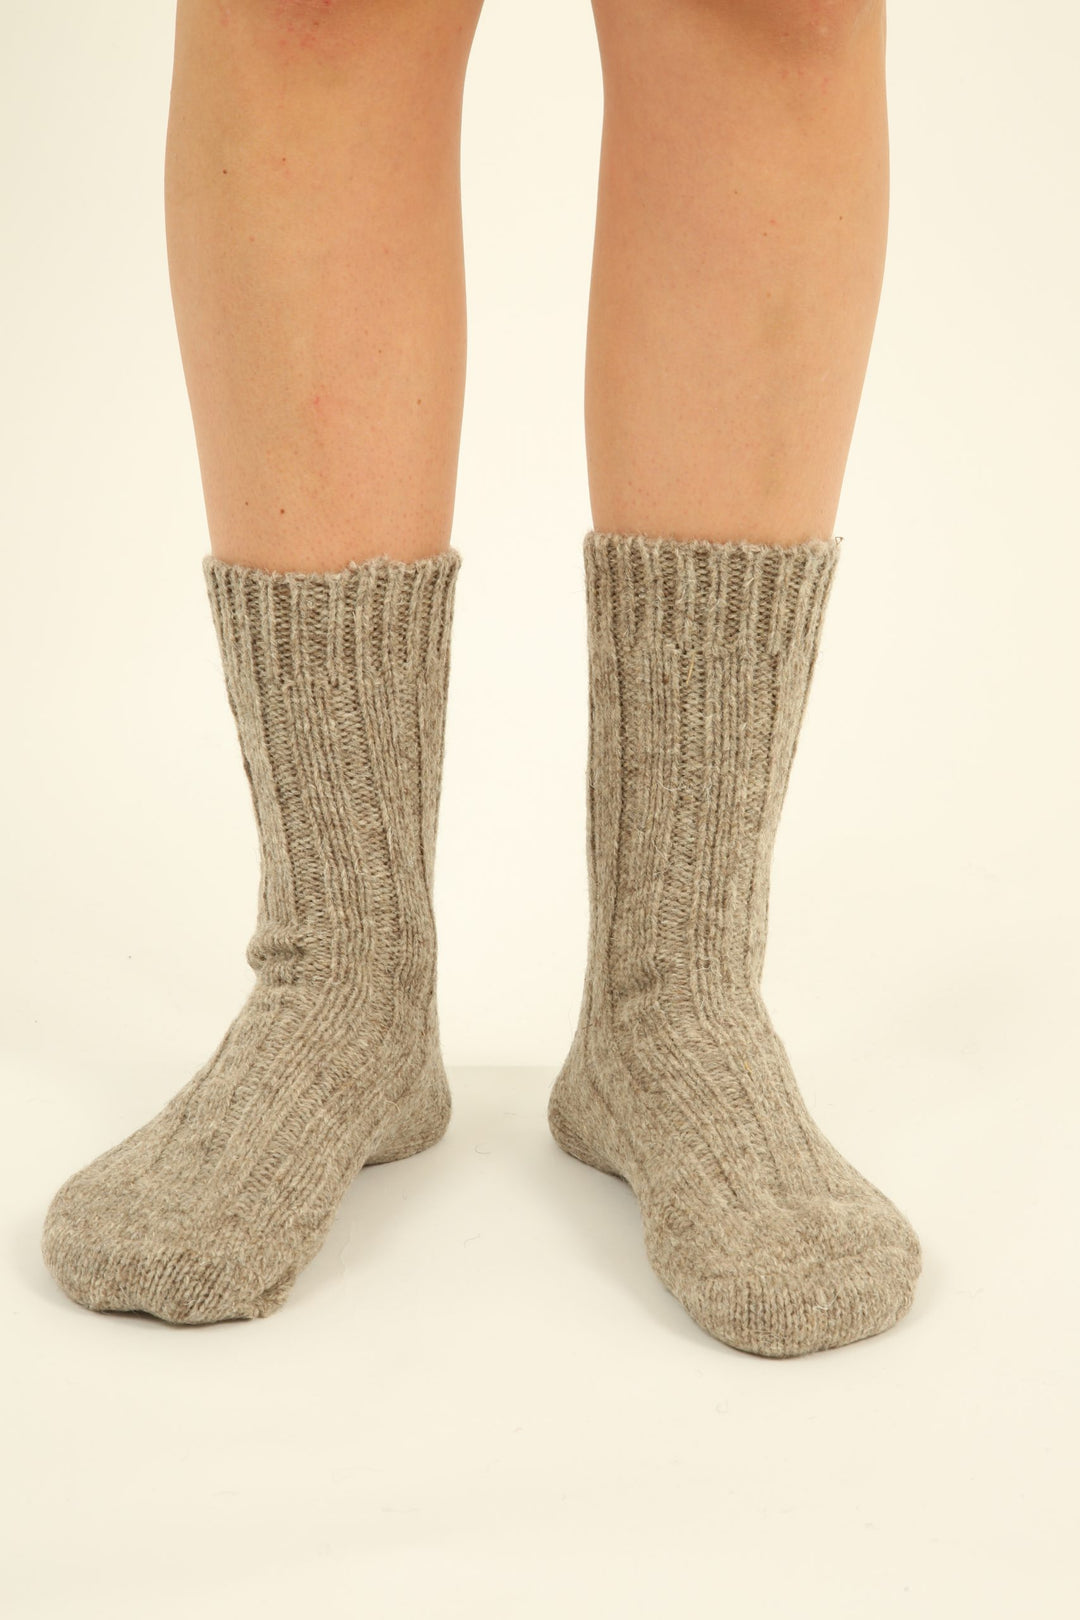 Socken aus 100% Schurwolle - hellbraun - hergestellt in Deutschland - 2 Paar